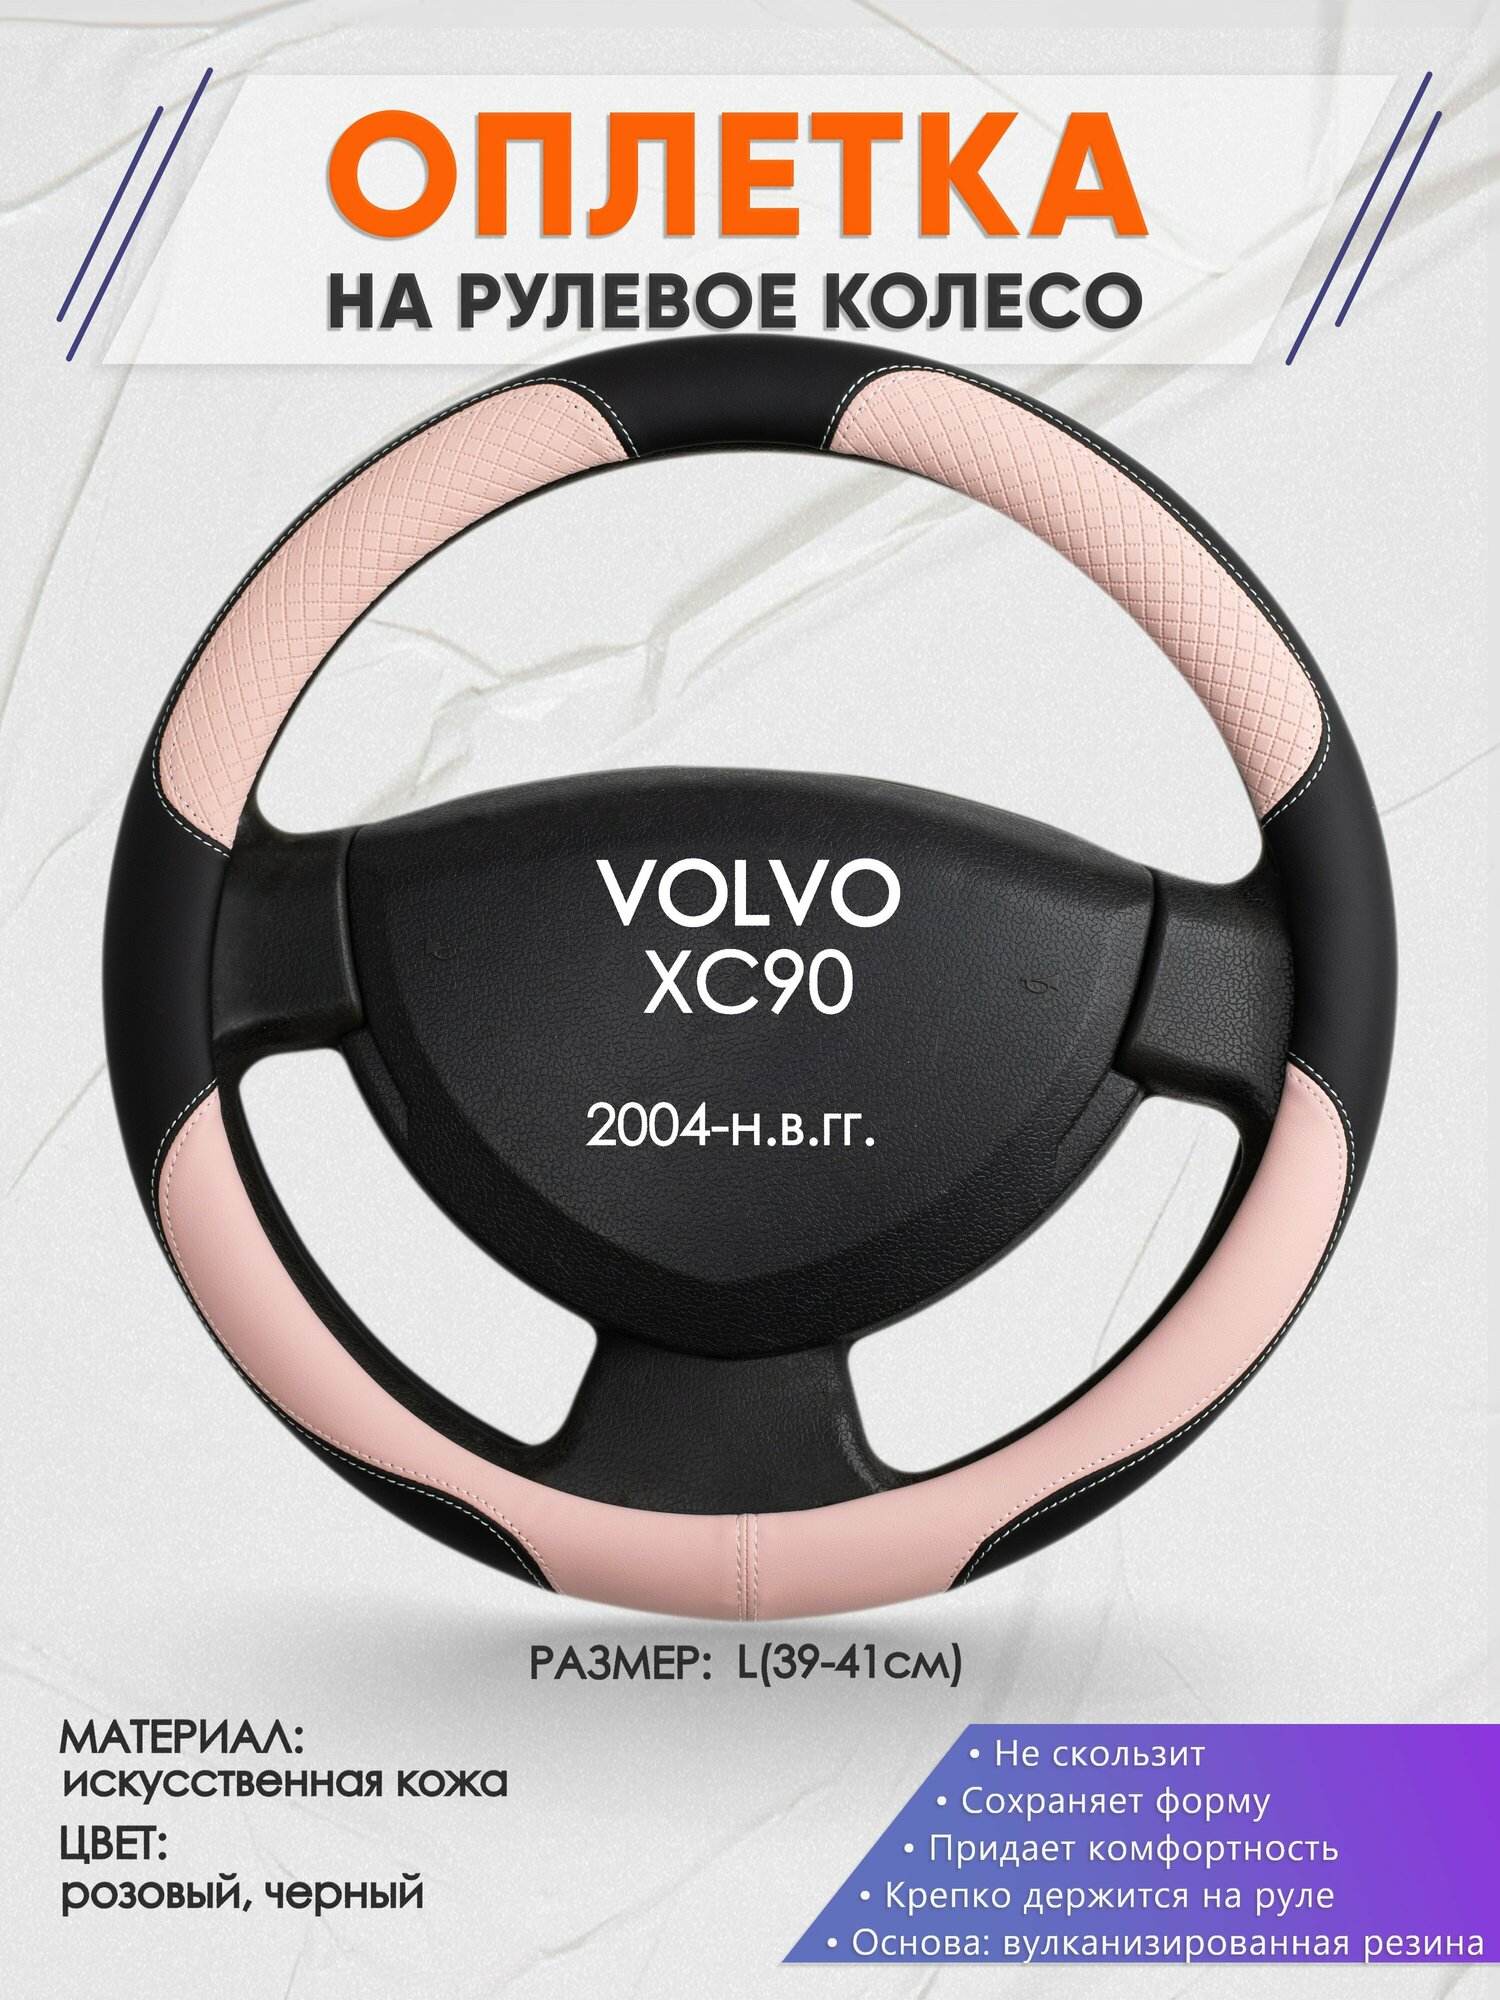 Оплетка на руль для VOLVO XC90(Вольво иксс90) 2004-н.в., L(39-41см), Искусственная кожа 59